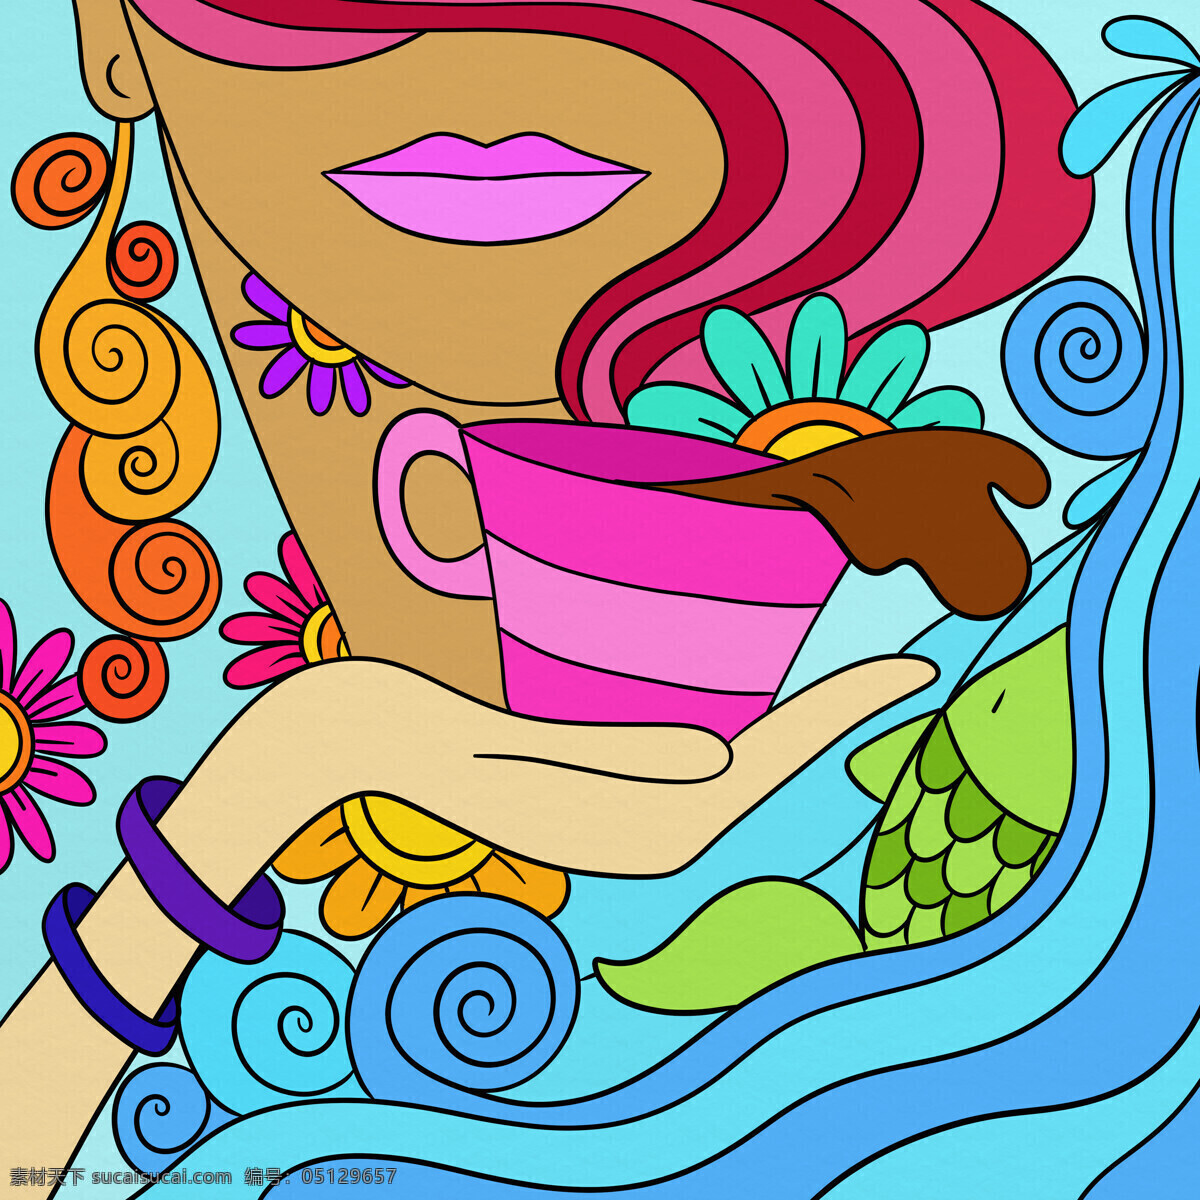 喝 咖啡 美女 插画 咖啡杯子 装饰画 女性插画 女人插图 绘画艺术 抽象画 卡通漫画 其他艺术 文化艺术